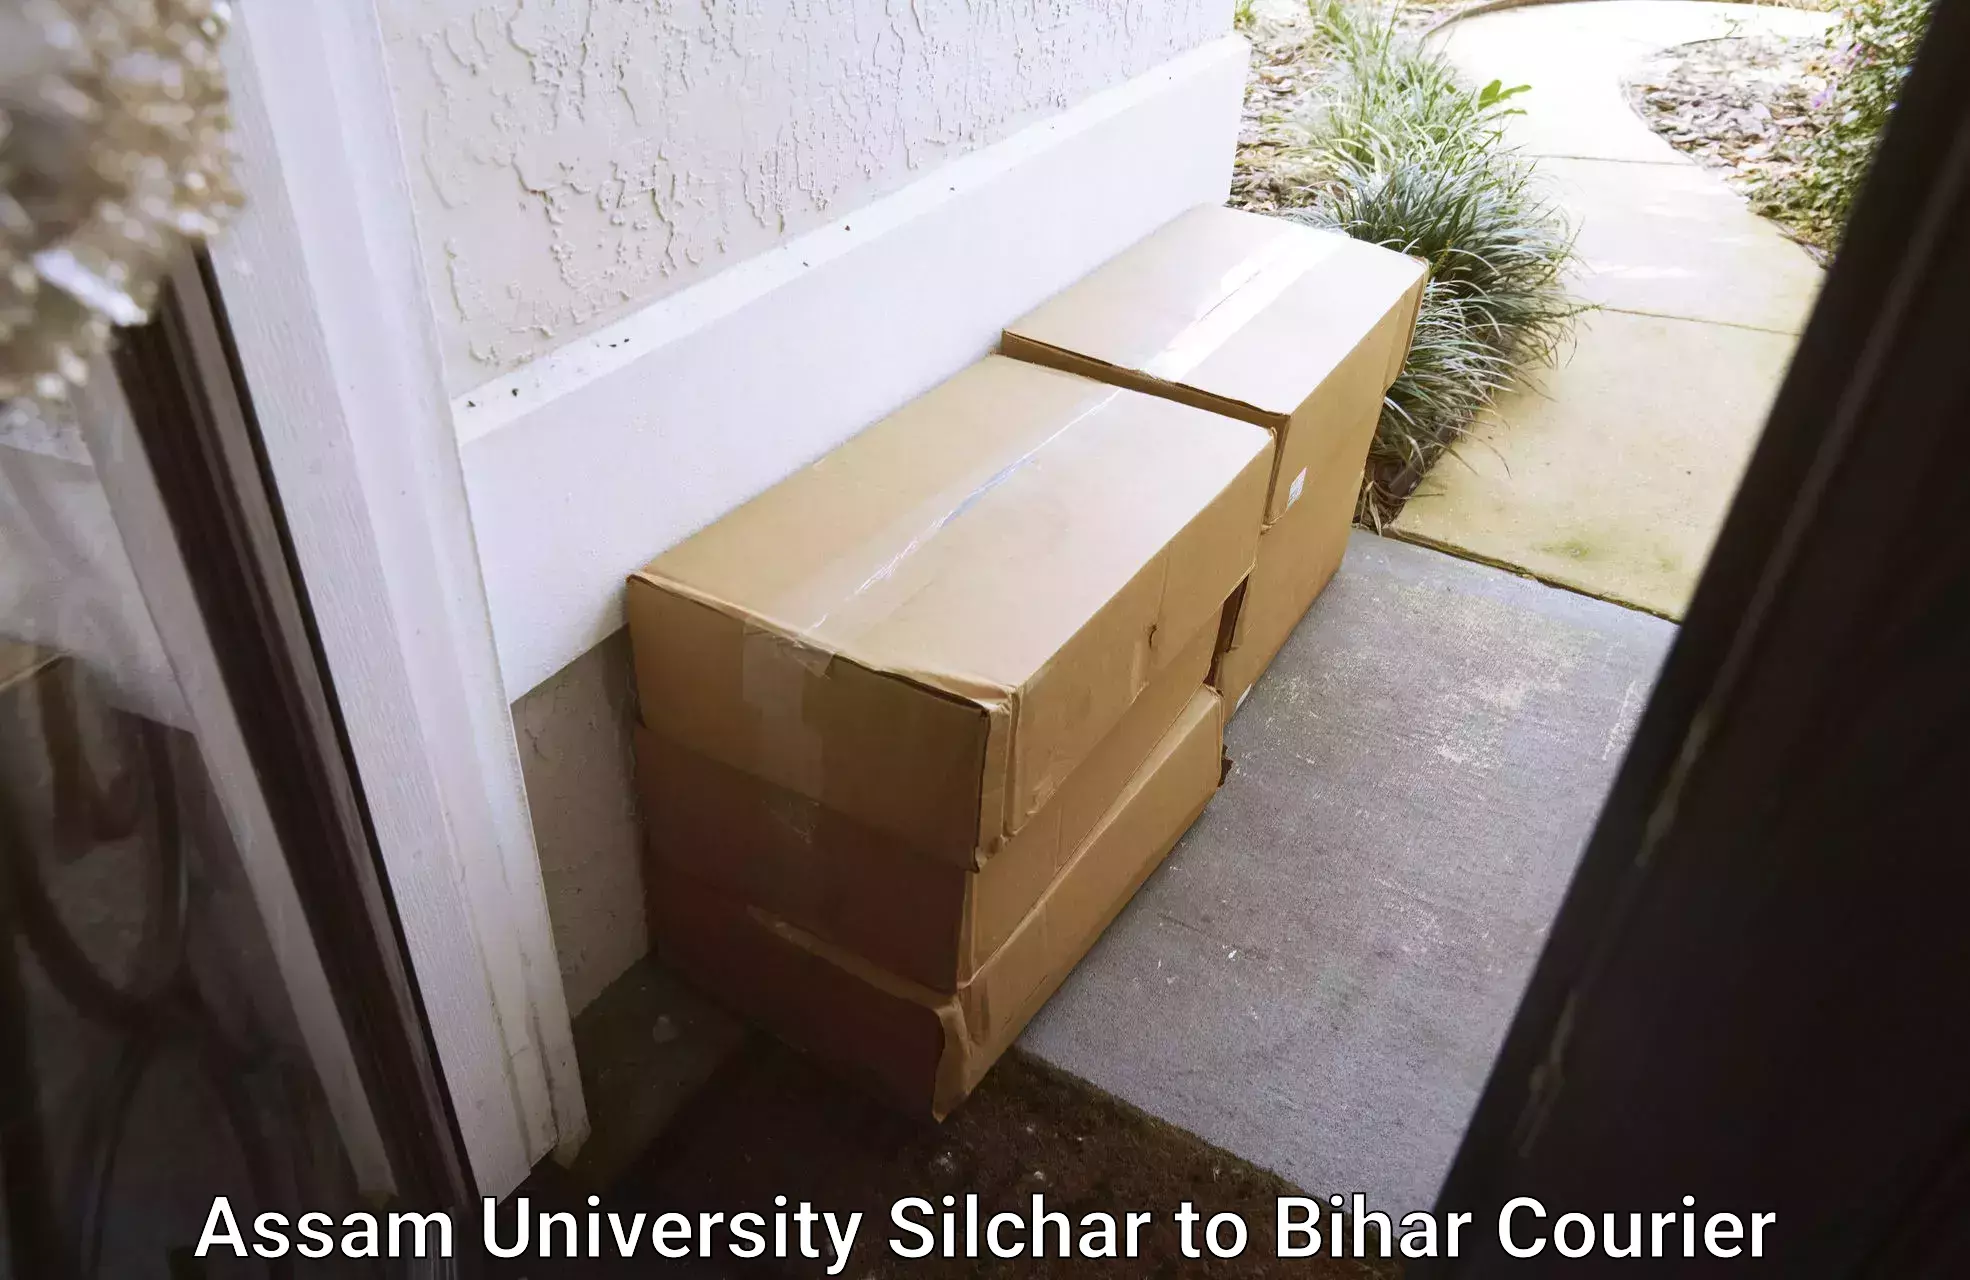 Global parcel delivery Assam University Silchar to Goh Aurangabad